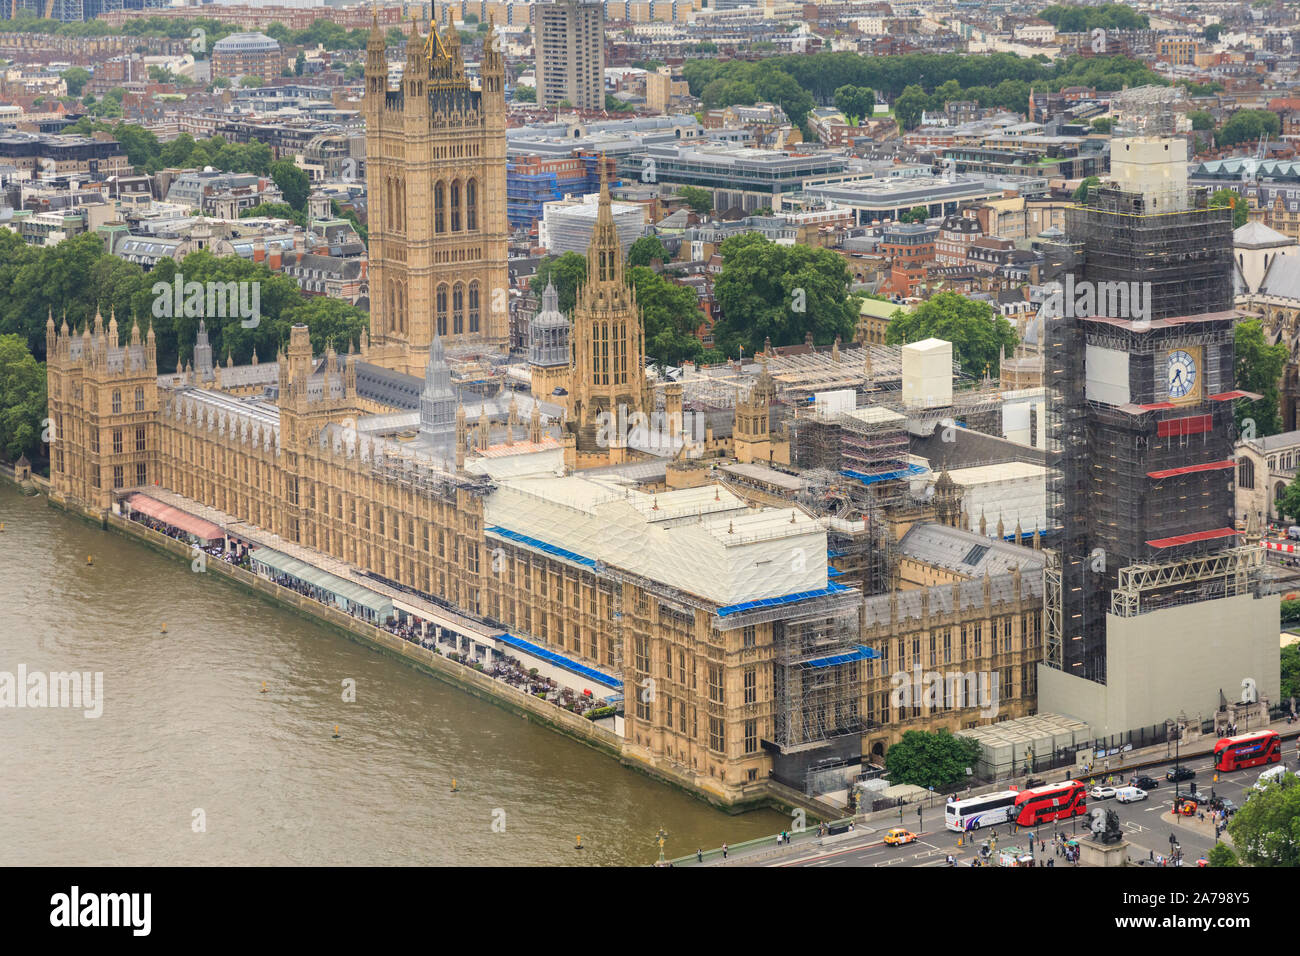 Luftbild, das Parlament, das Elizabeth Tower, bekannt als Big Ben und die Themse, Westminster, London, UK Stockfoto